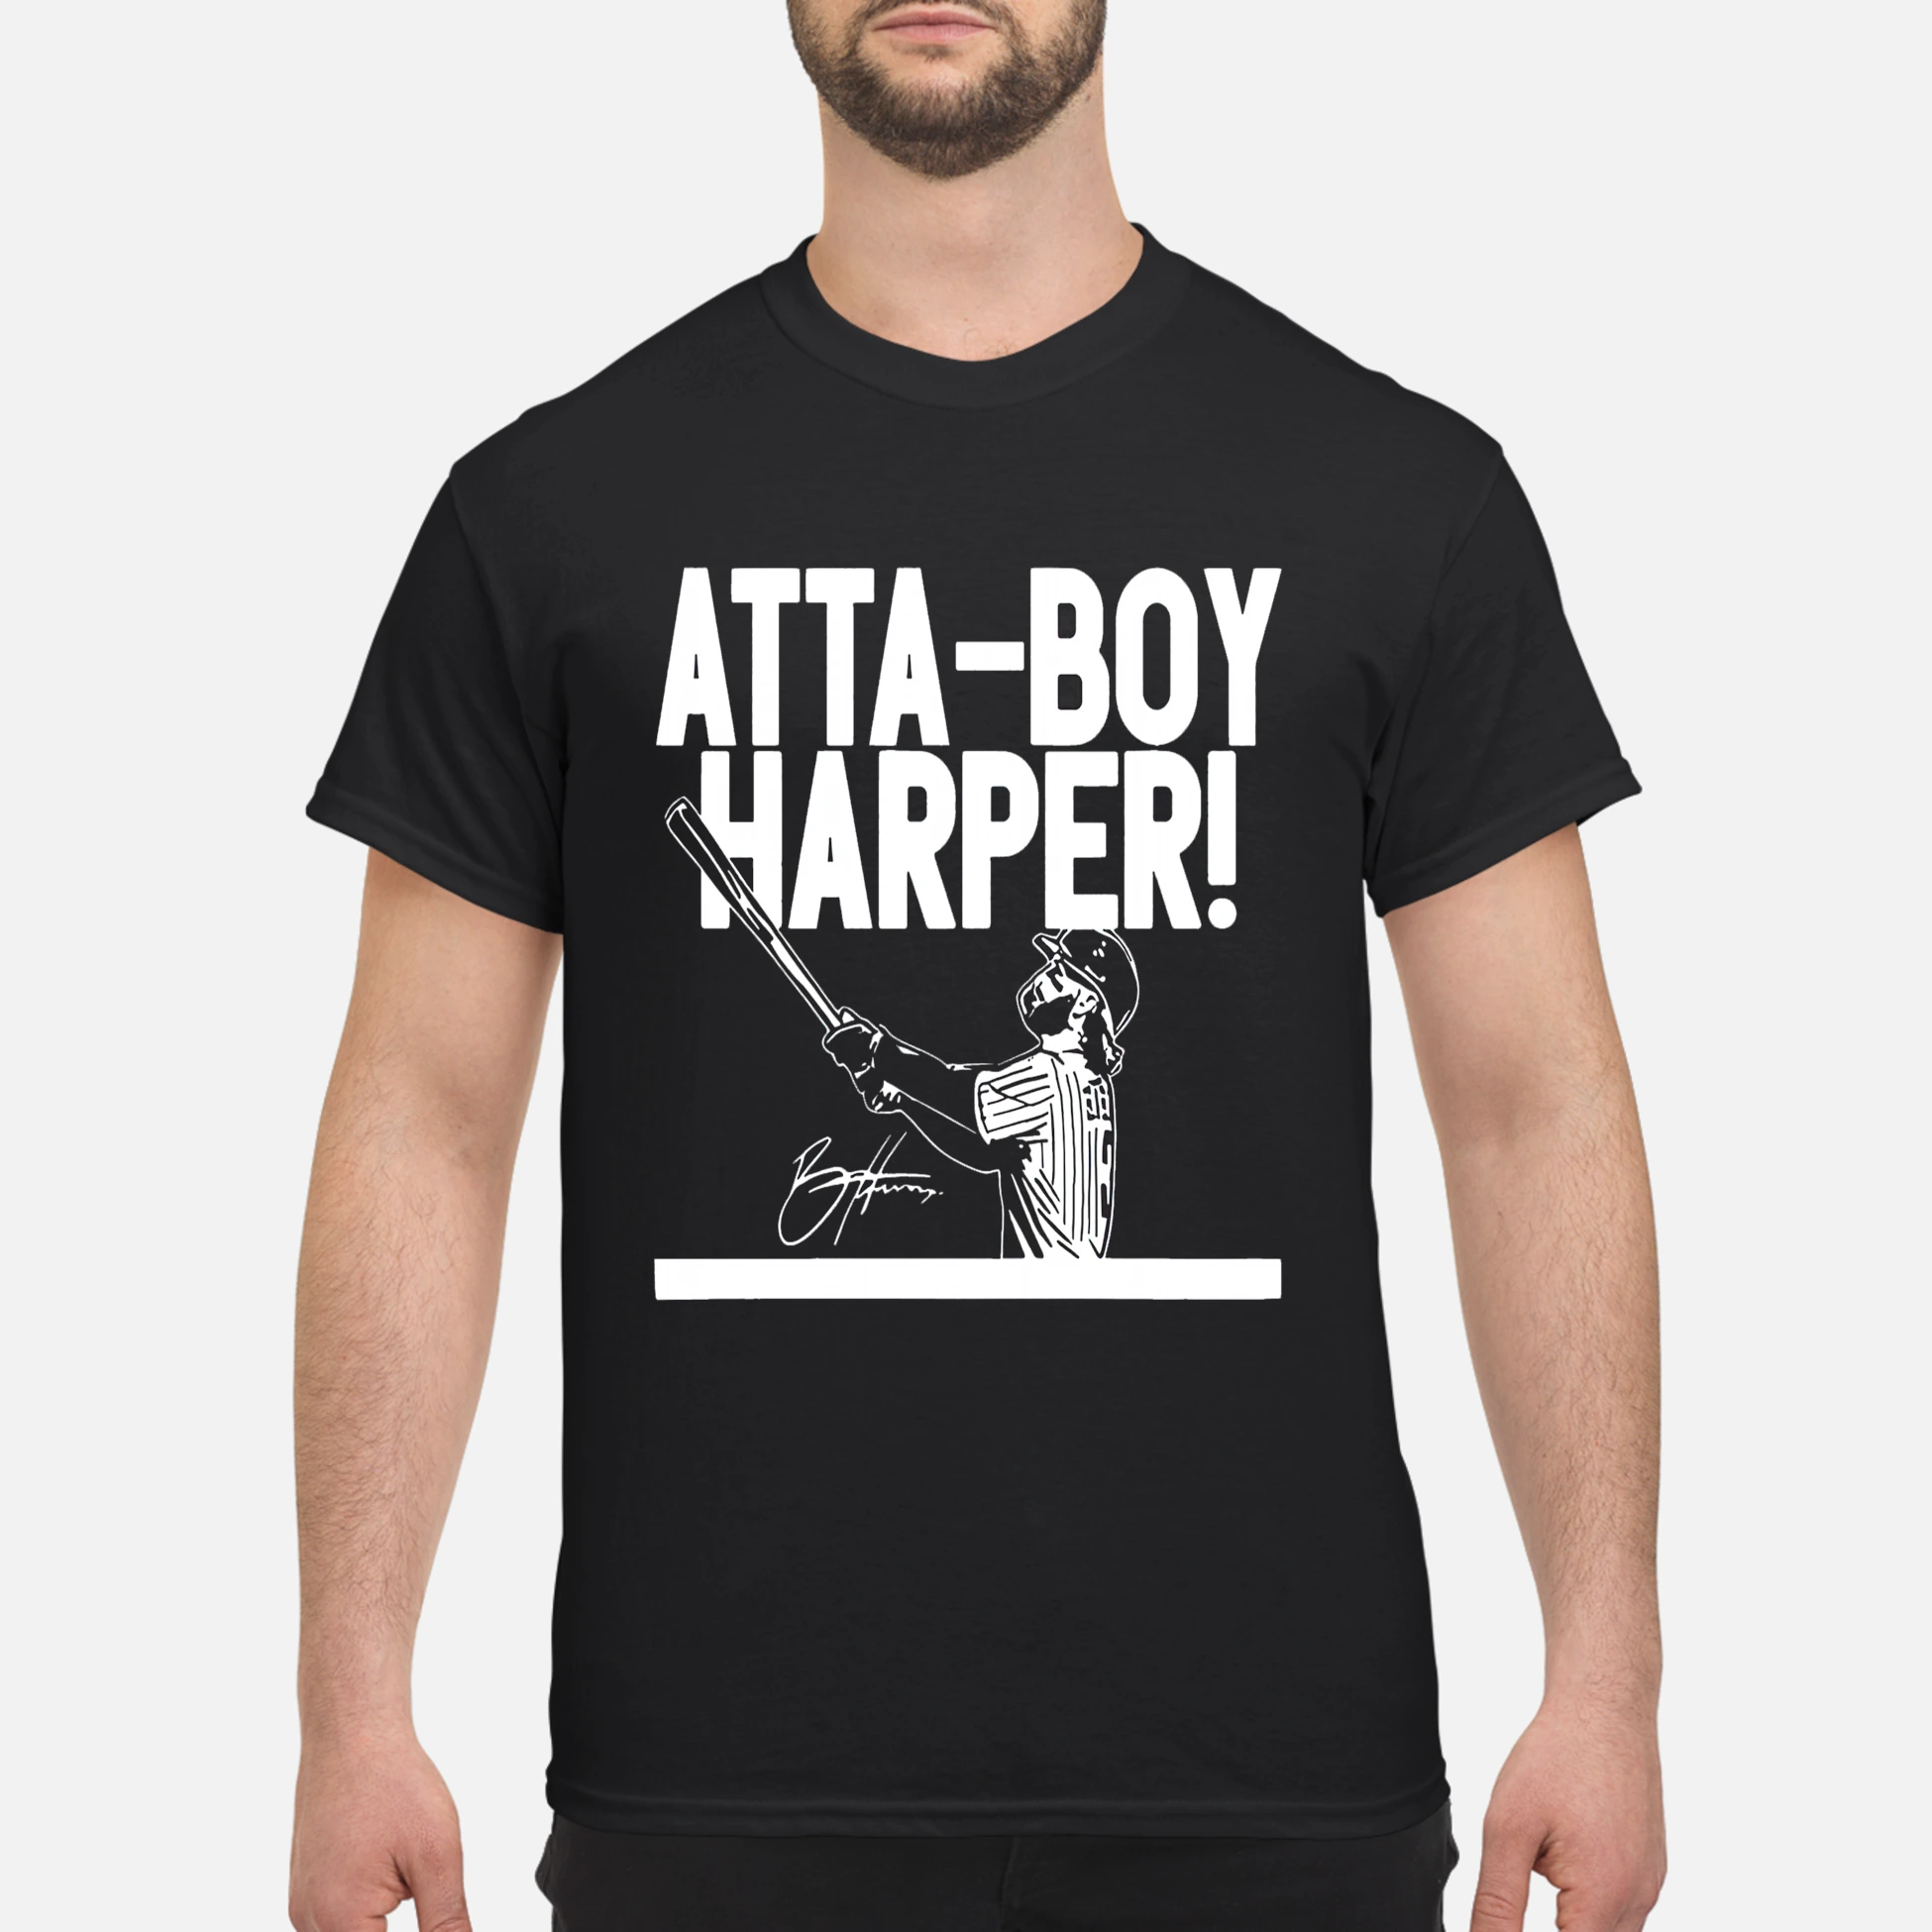 Bryce harper attaboy harper shirt, hoodie, sweatshirt for men and